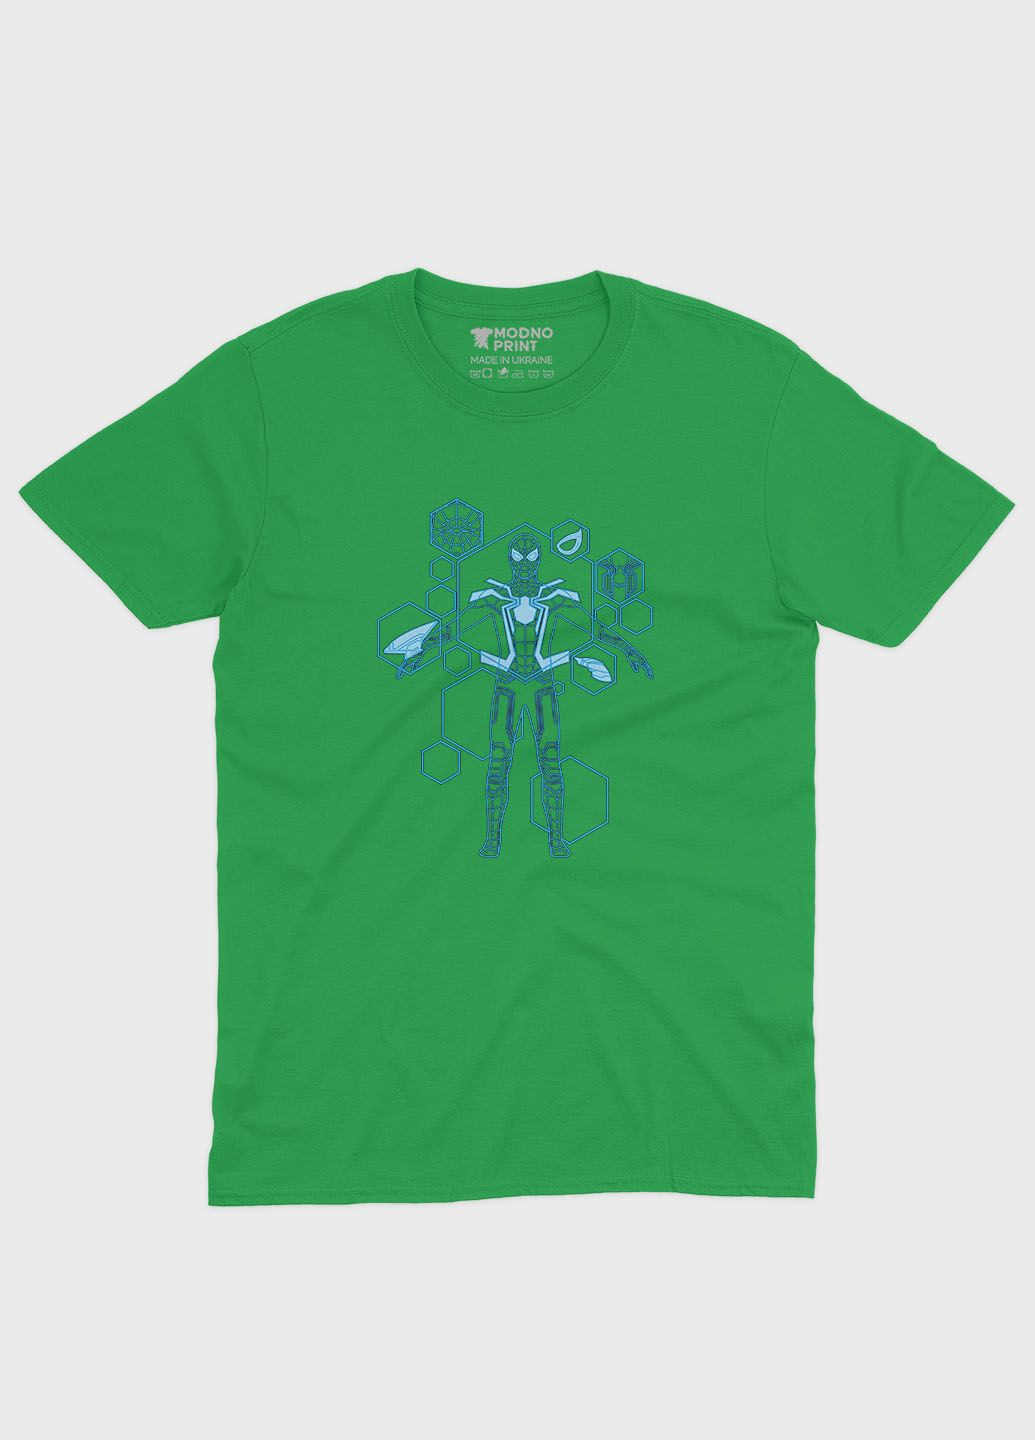 Зелена демісезонна футболка для дівчинки з принтом супергероя - людина-павук (ts001-1-keg-006-014-094-g) Modno